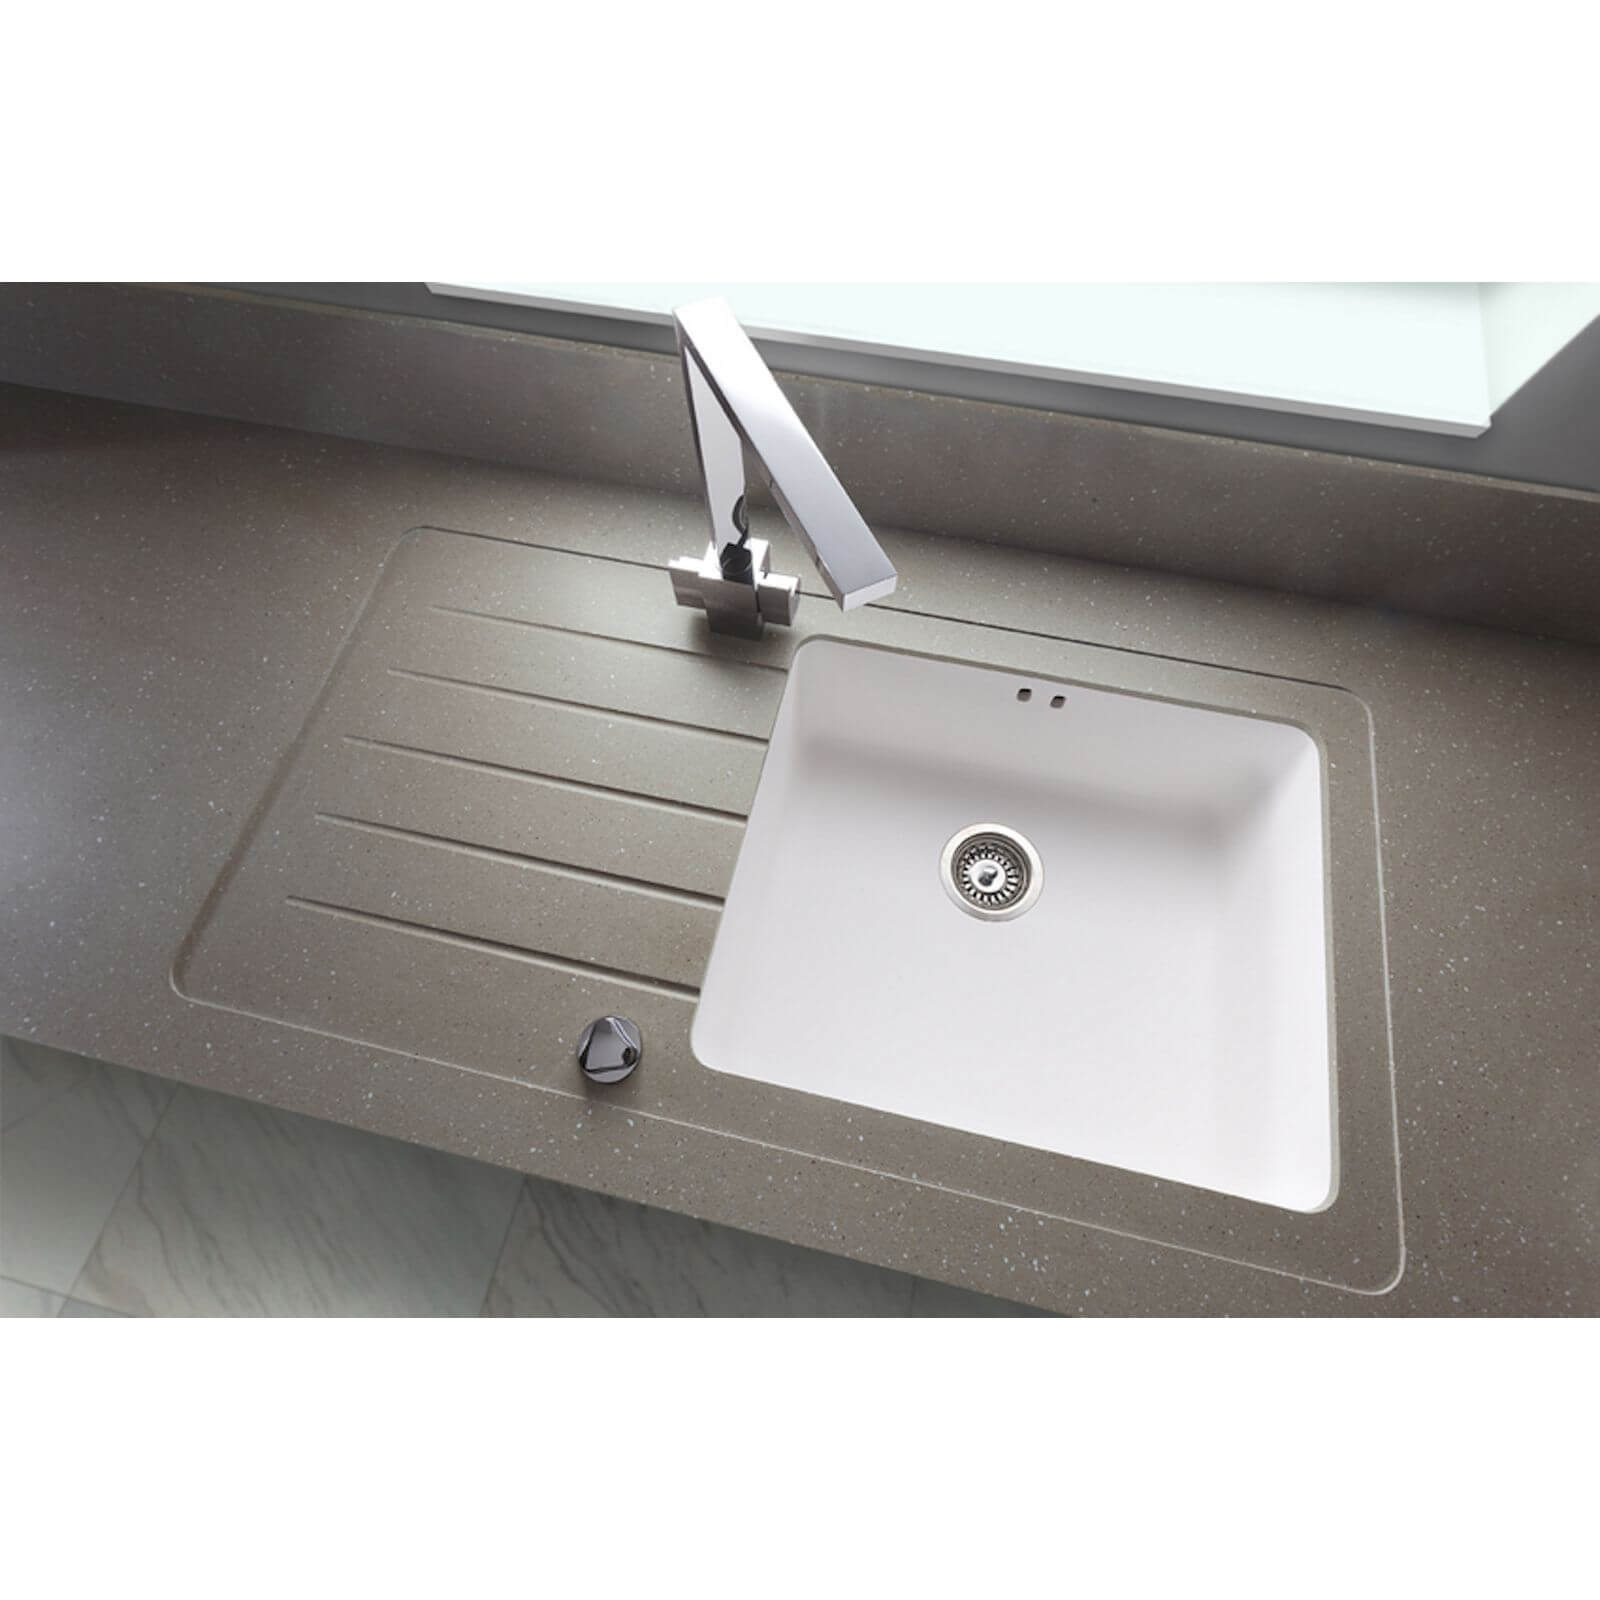 Maia Brazilian Greige Kitchen Sink Worktop - 1.5 Designer Left Hand Bowl - 3600 x 650 x 42mm